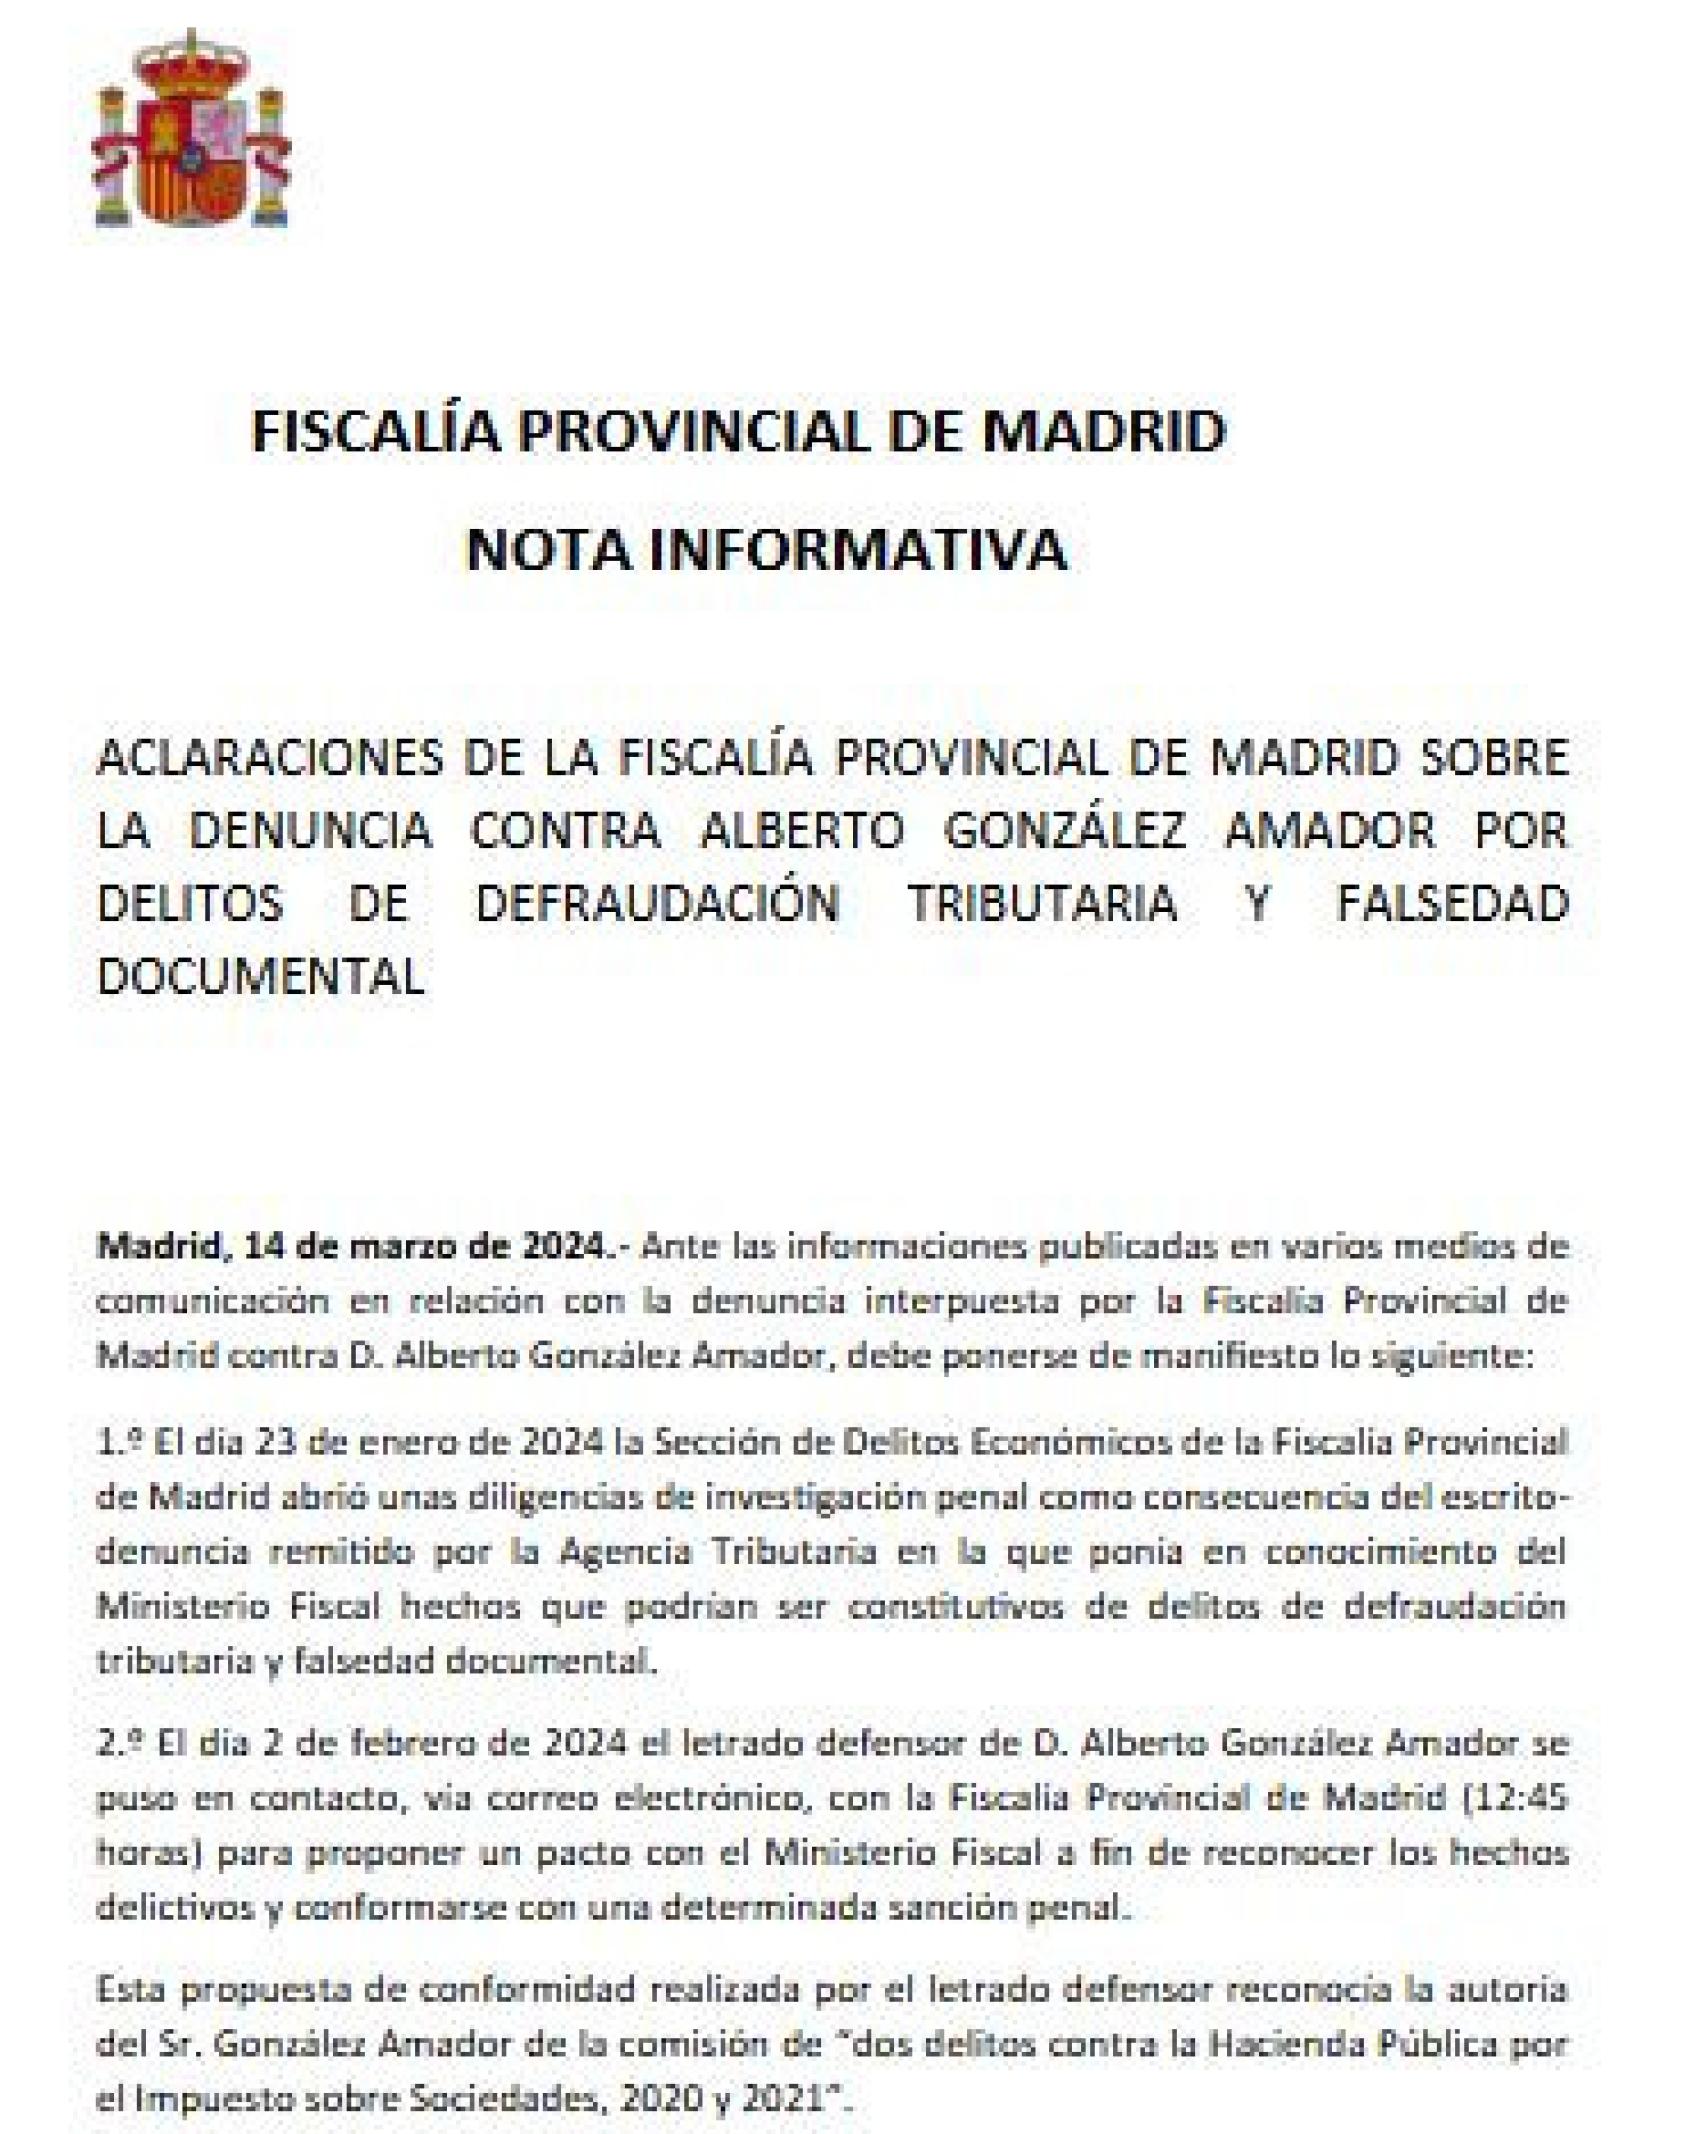 Fragmento de la 'Nota informativa' difundida por la Fiscalía Provincial de Madrid el pasado 14 de marzo, que provocó la querella de Alberto González Amador por revelación de secretos.